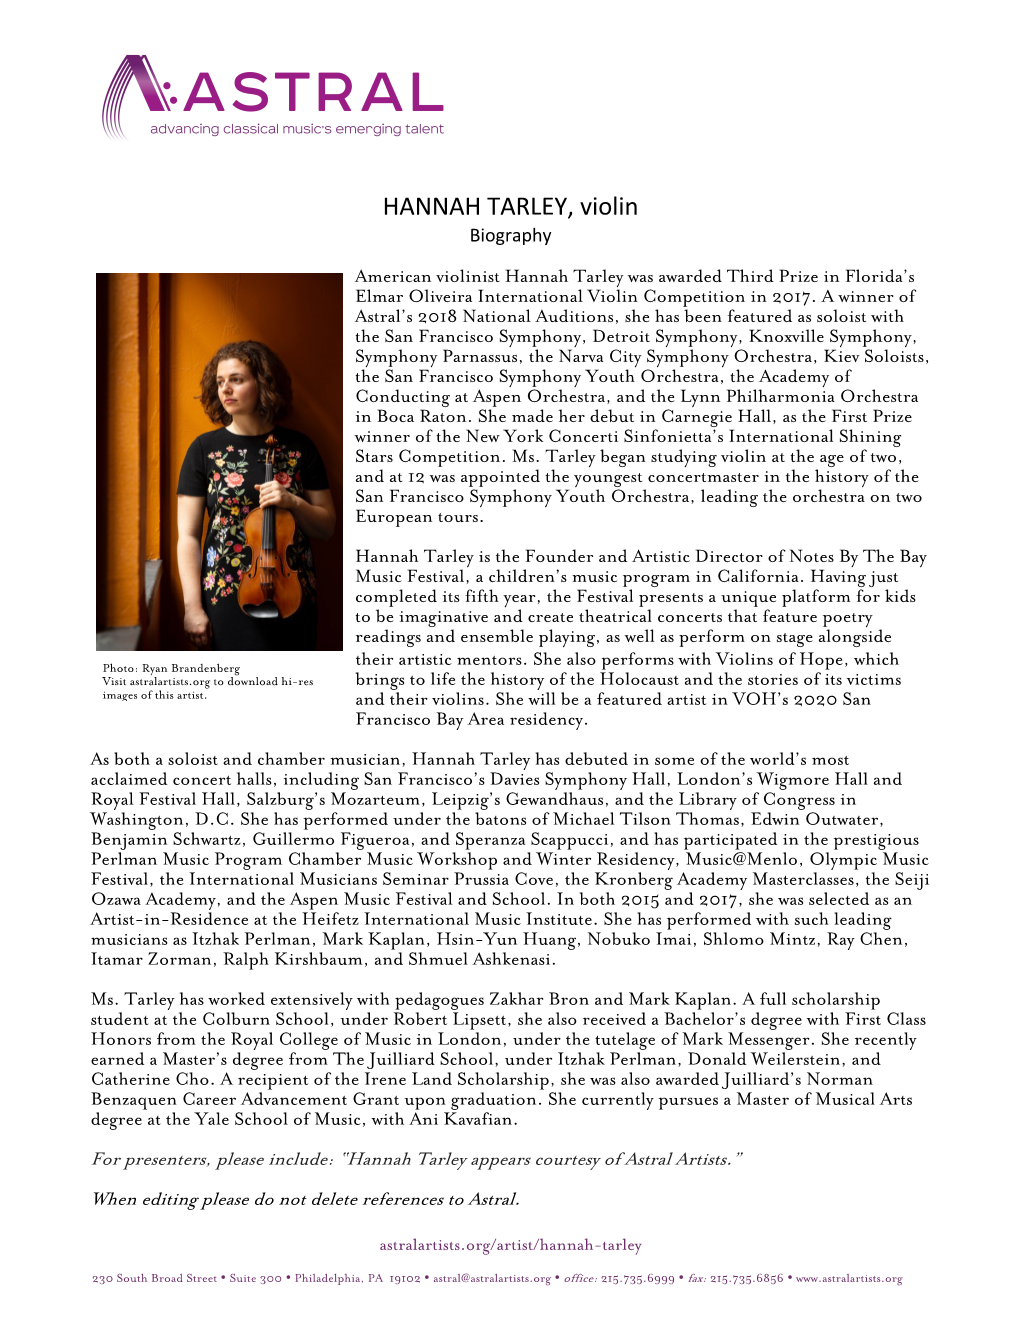 HANNAH TARLEY, Violin Biography